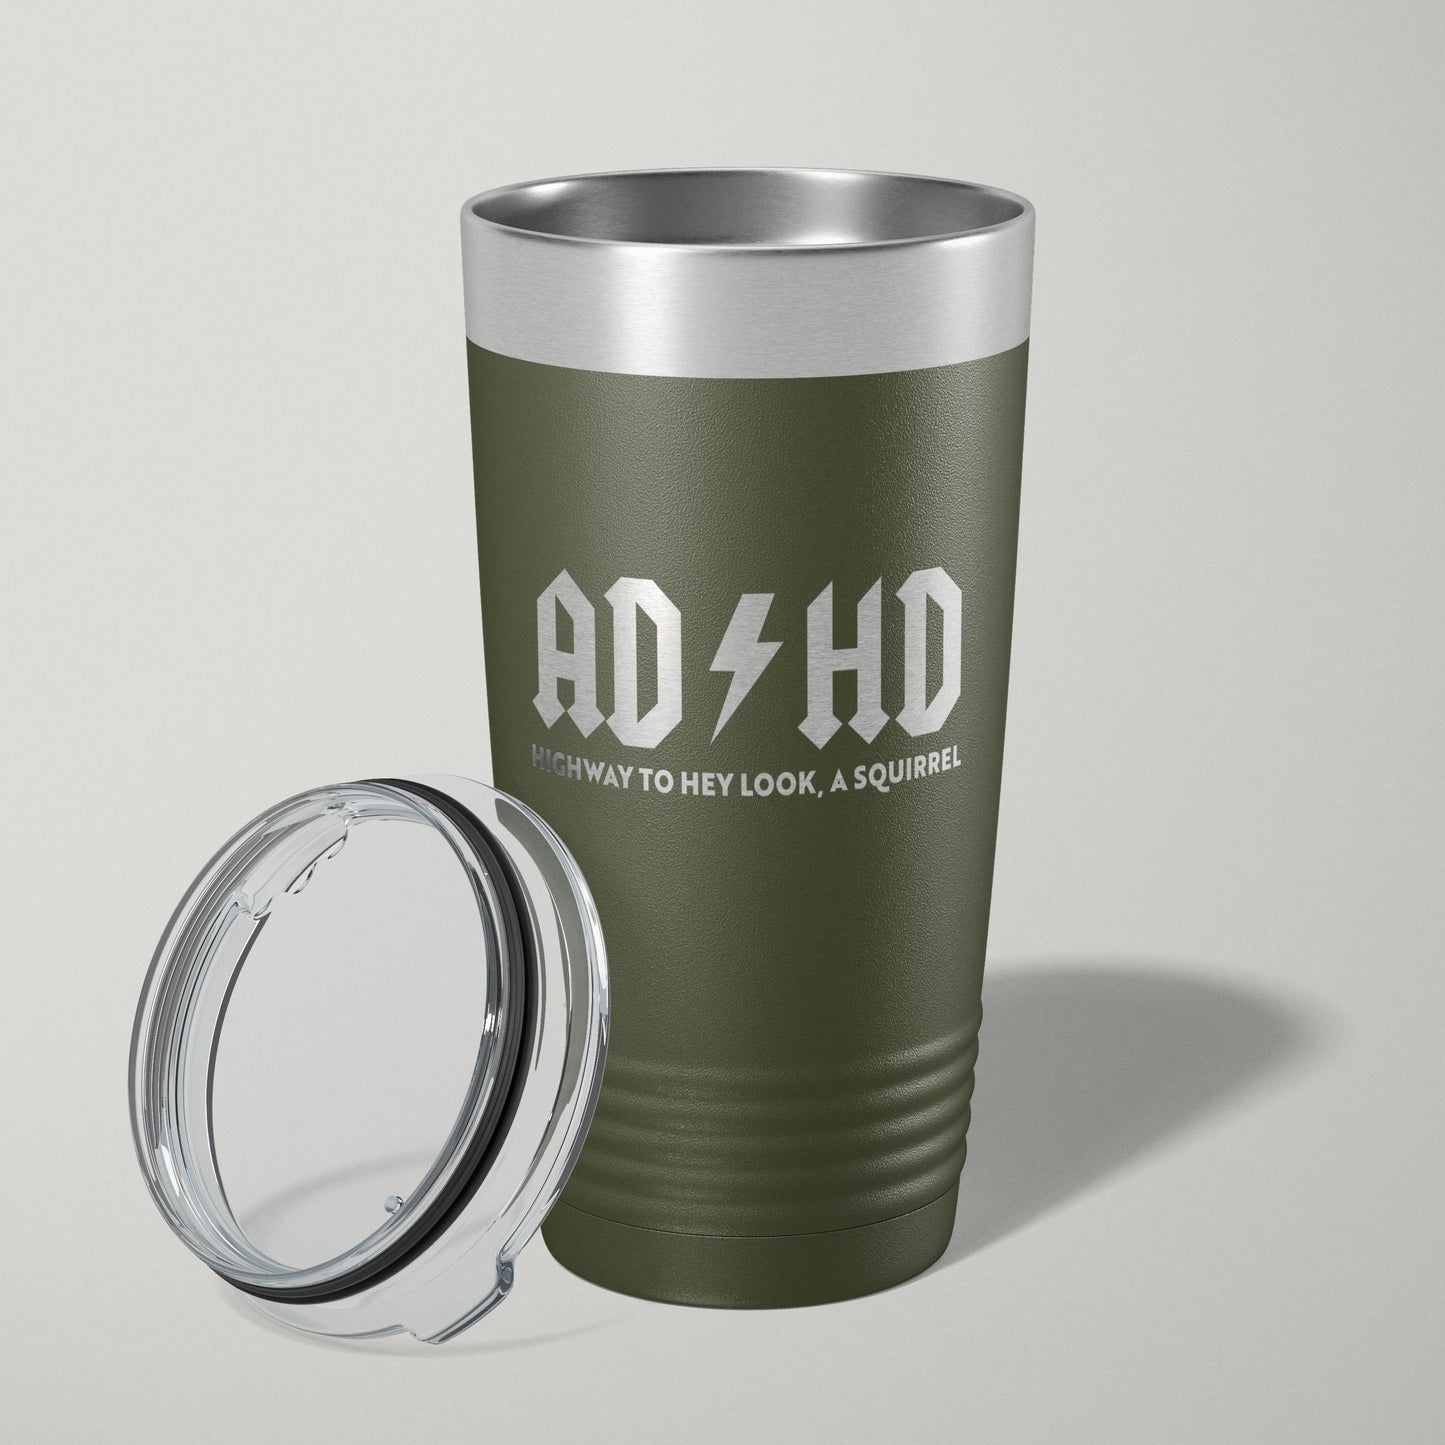 ADHD Hey Look, A Squirrel 20oz Laser Engraved Tumbler Travel Mug